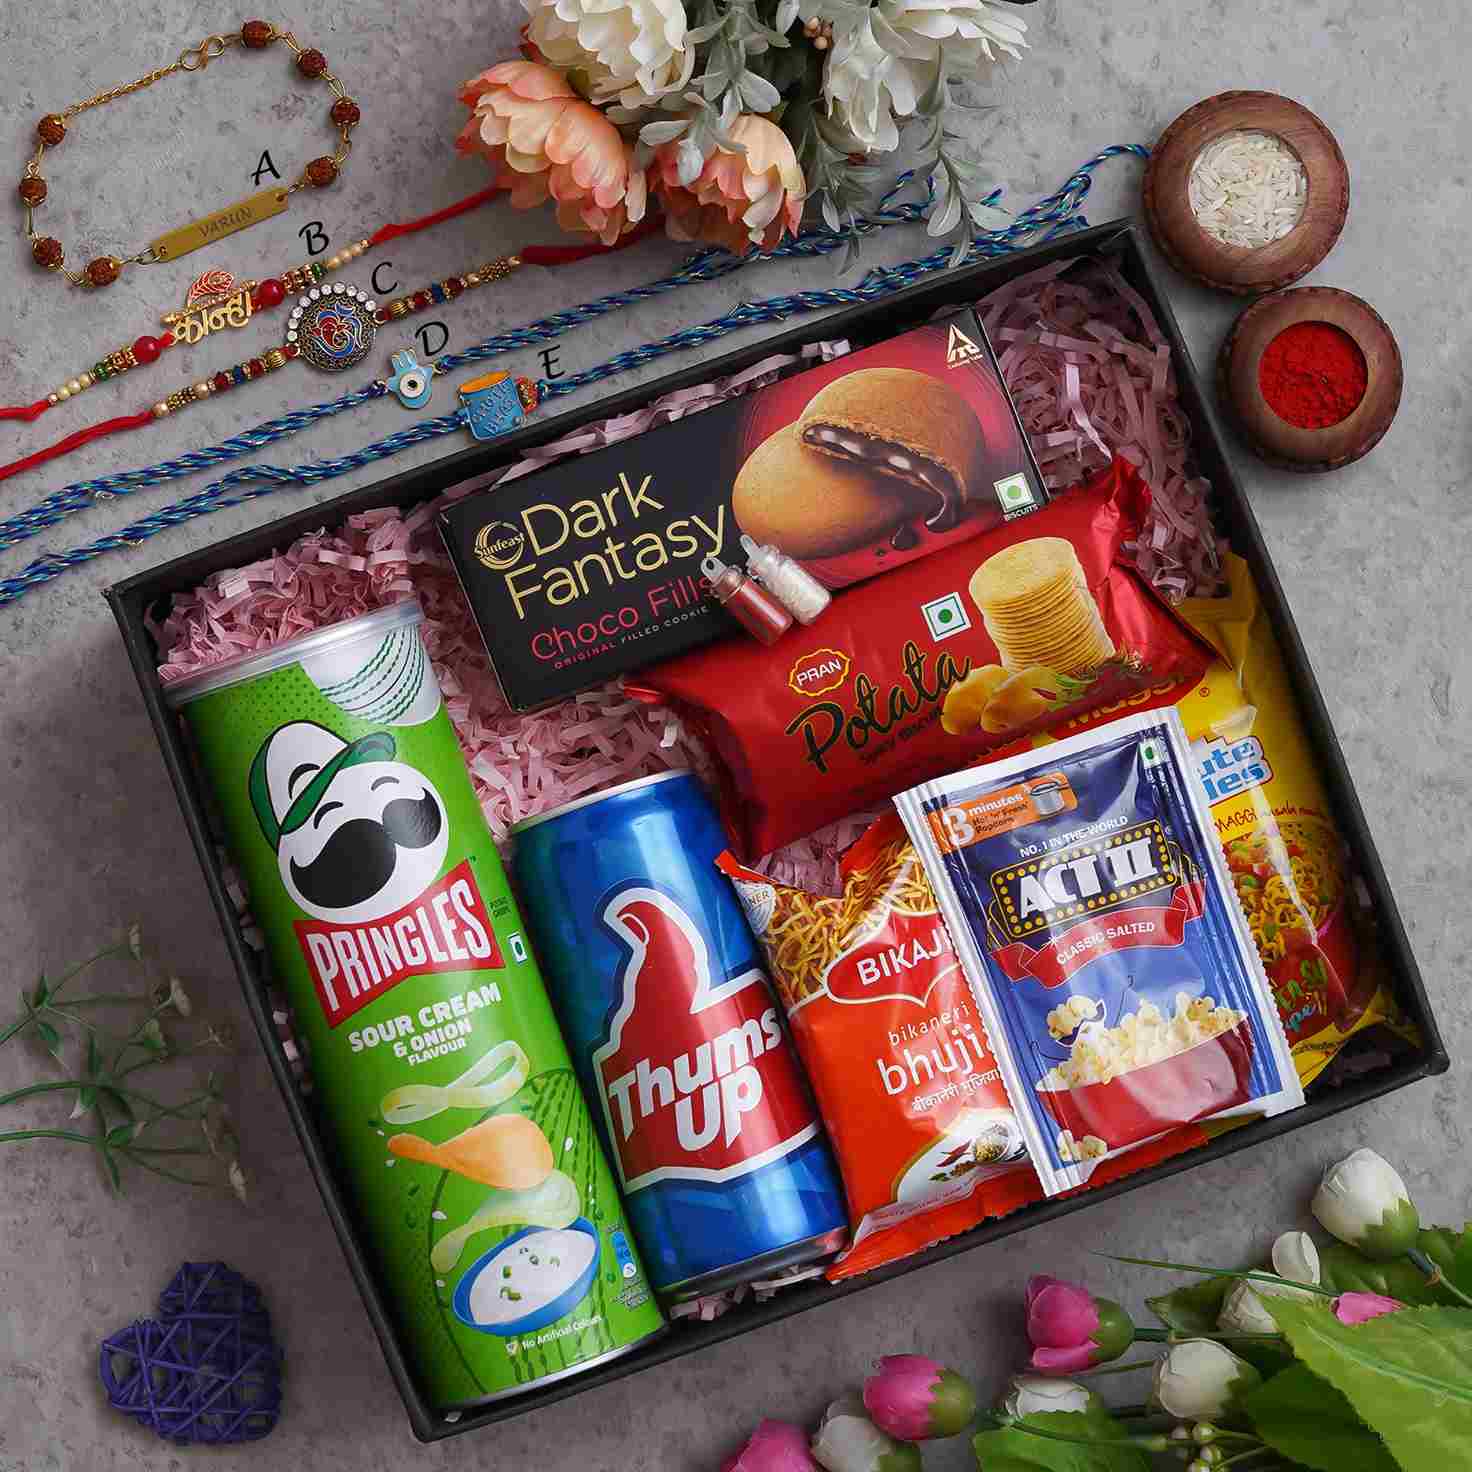 Buy Bikaji Aslee Bikaneri - Rakhi Gift Combo | Bhaiya Bhabhi Rakhi | Mango  Chocolate Burfi 250 Gm | Raksha Bandhan Gift Online at Best Prices in India  - JioMart.